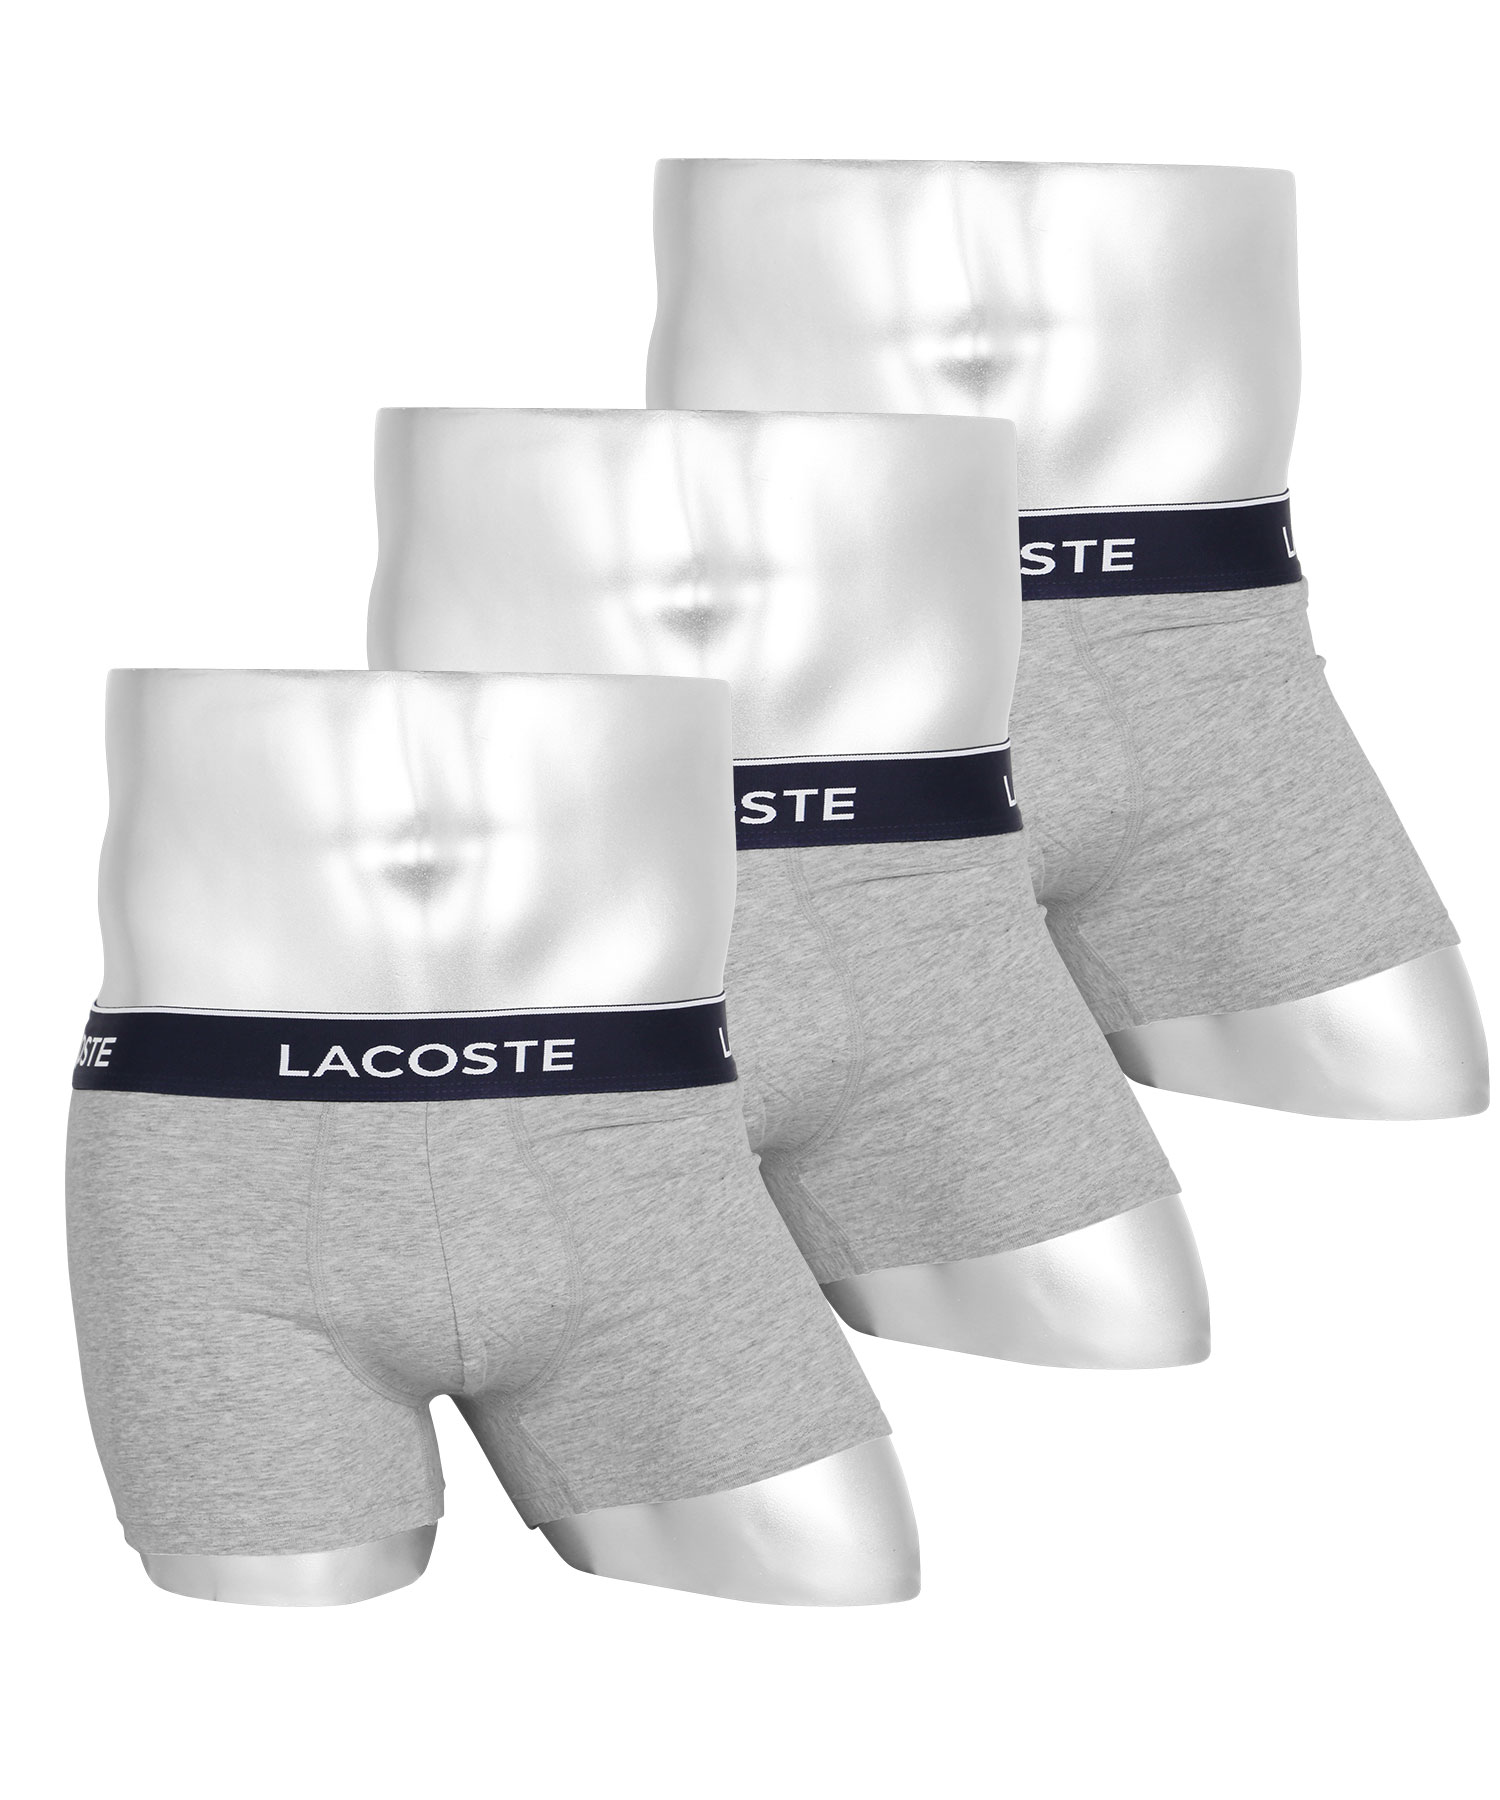 ラコステ LACOSTE ボクサーパンツ 3枚セット メンズ アンダーウェア 綿混 コットン ブラン...